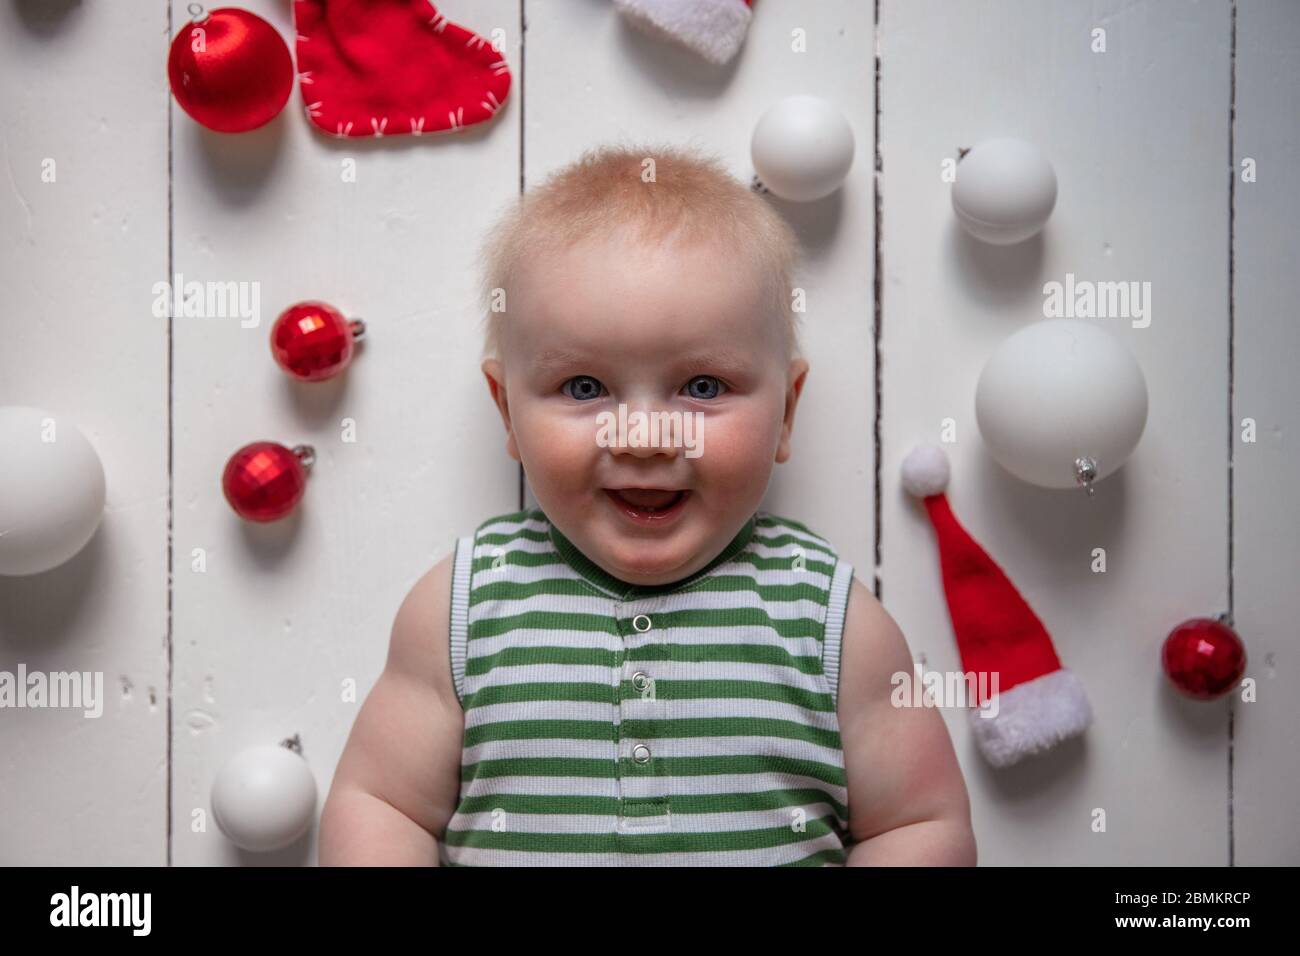 Fröhliches Baby umgeben von festlichen Dekorationen, die Weihnachten feiern Stockfoto